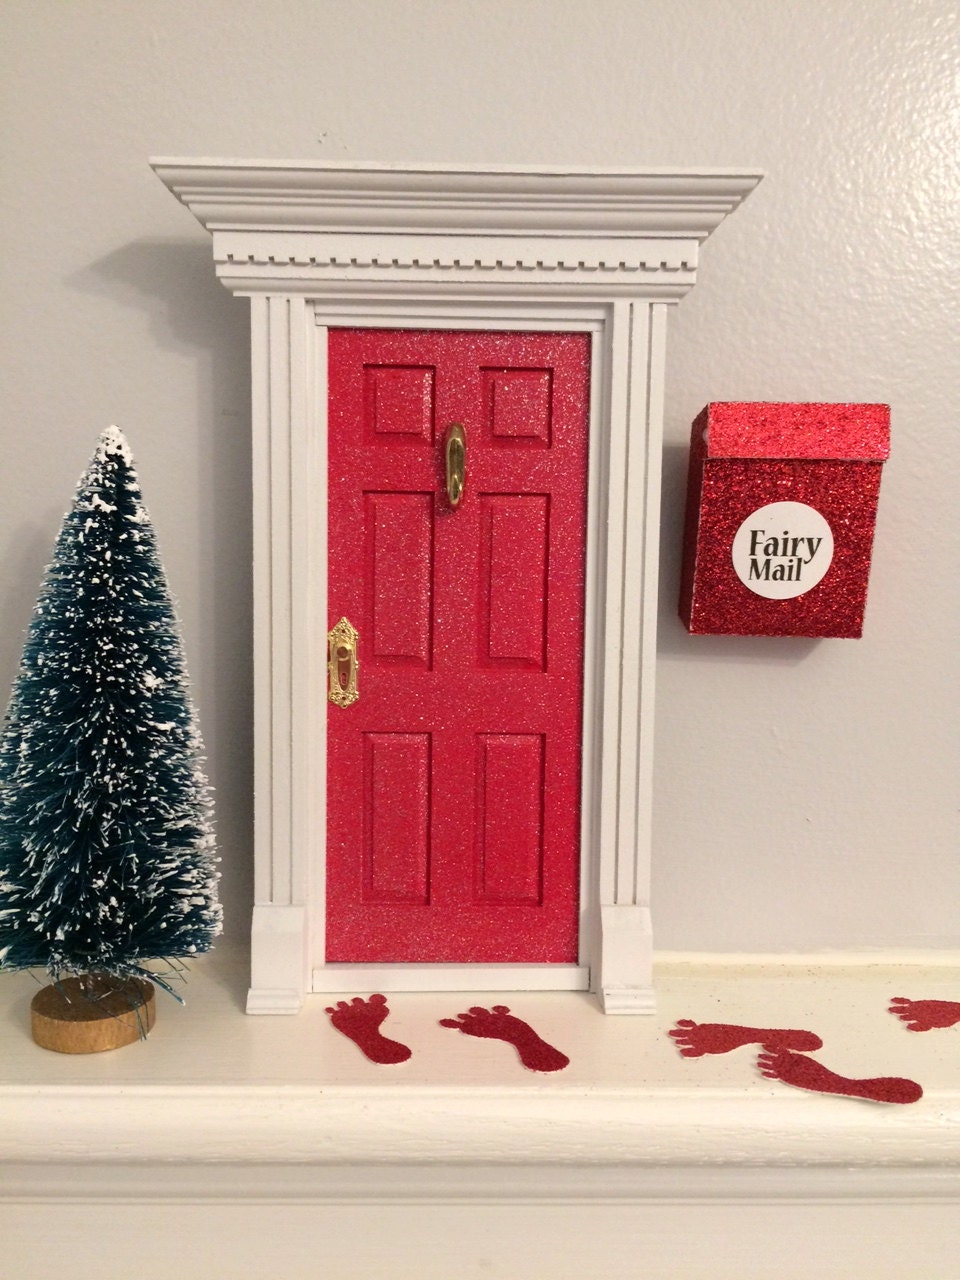 Red glitter fairy door